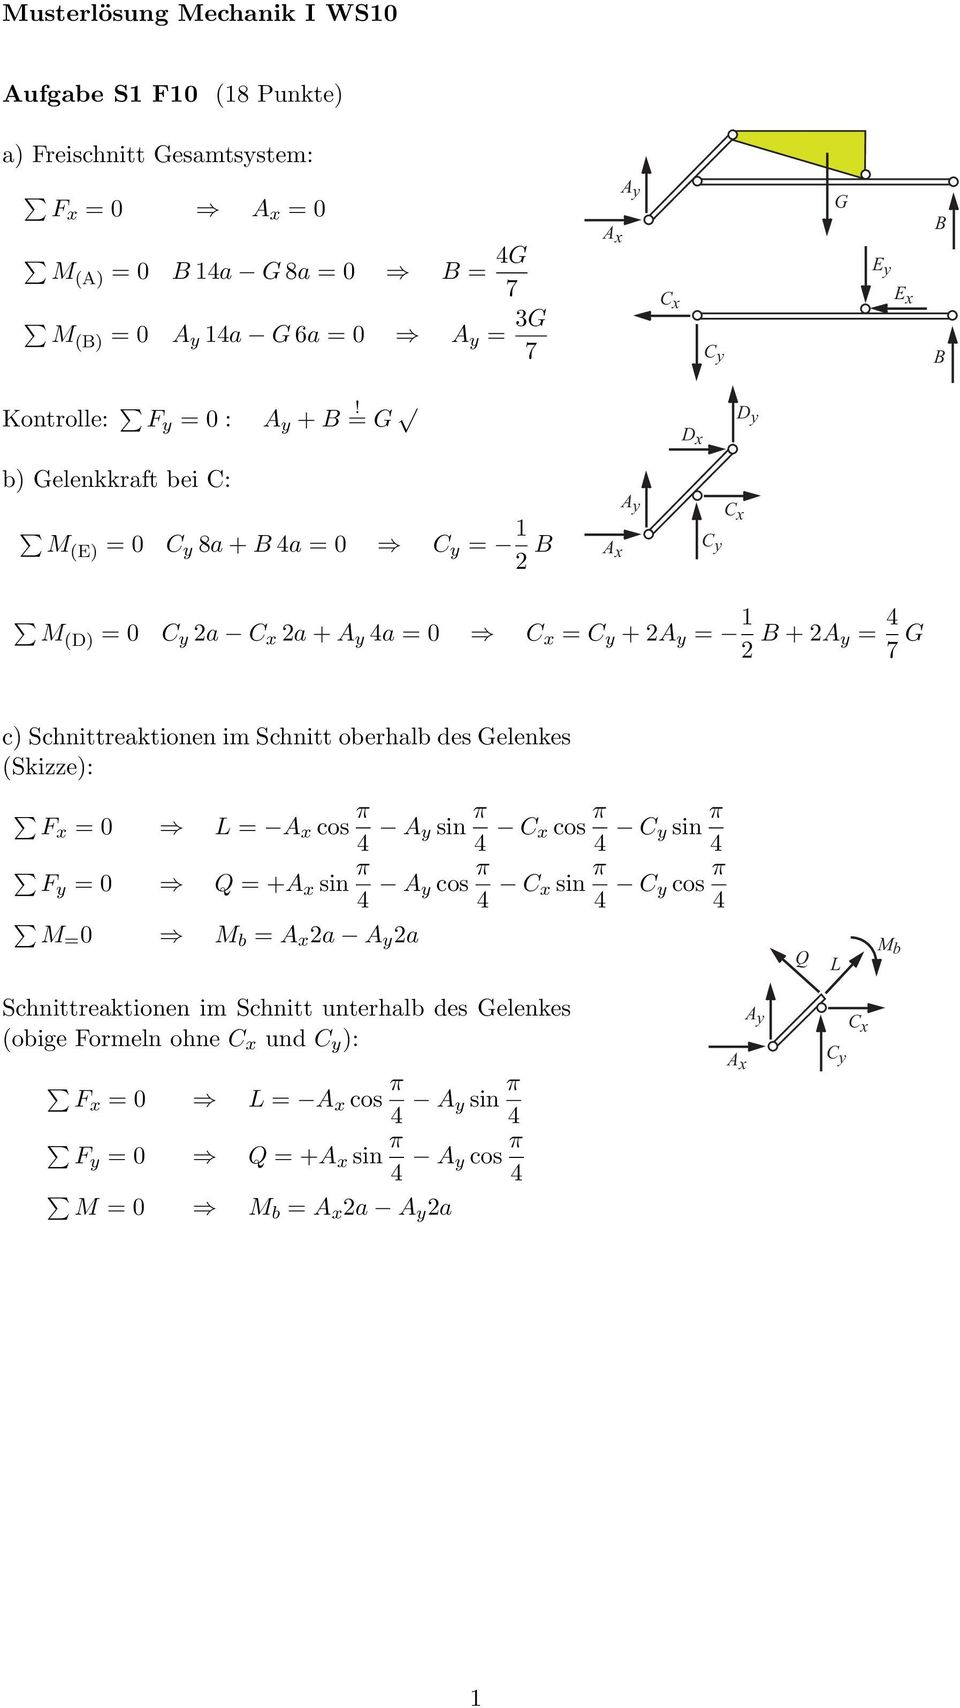 = G D x D y b) Gelenkkraft bei C: M(E) = 0 C y 8a + 4a = 0 C y = 1 2 C y C x M(D) = 0 C y C x + 4a = 0 C x = C y + 2 = 1 2 + 2 = 4 7 G c) Scnittreaktionen im Scnitt